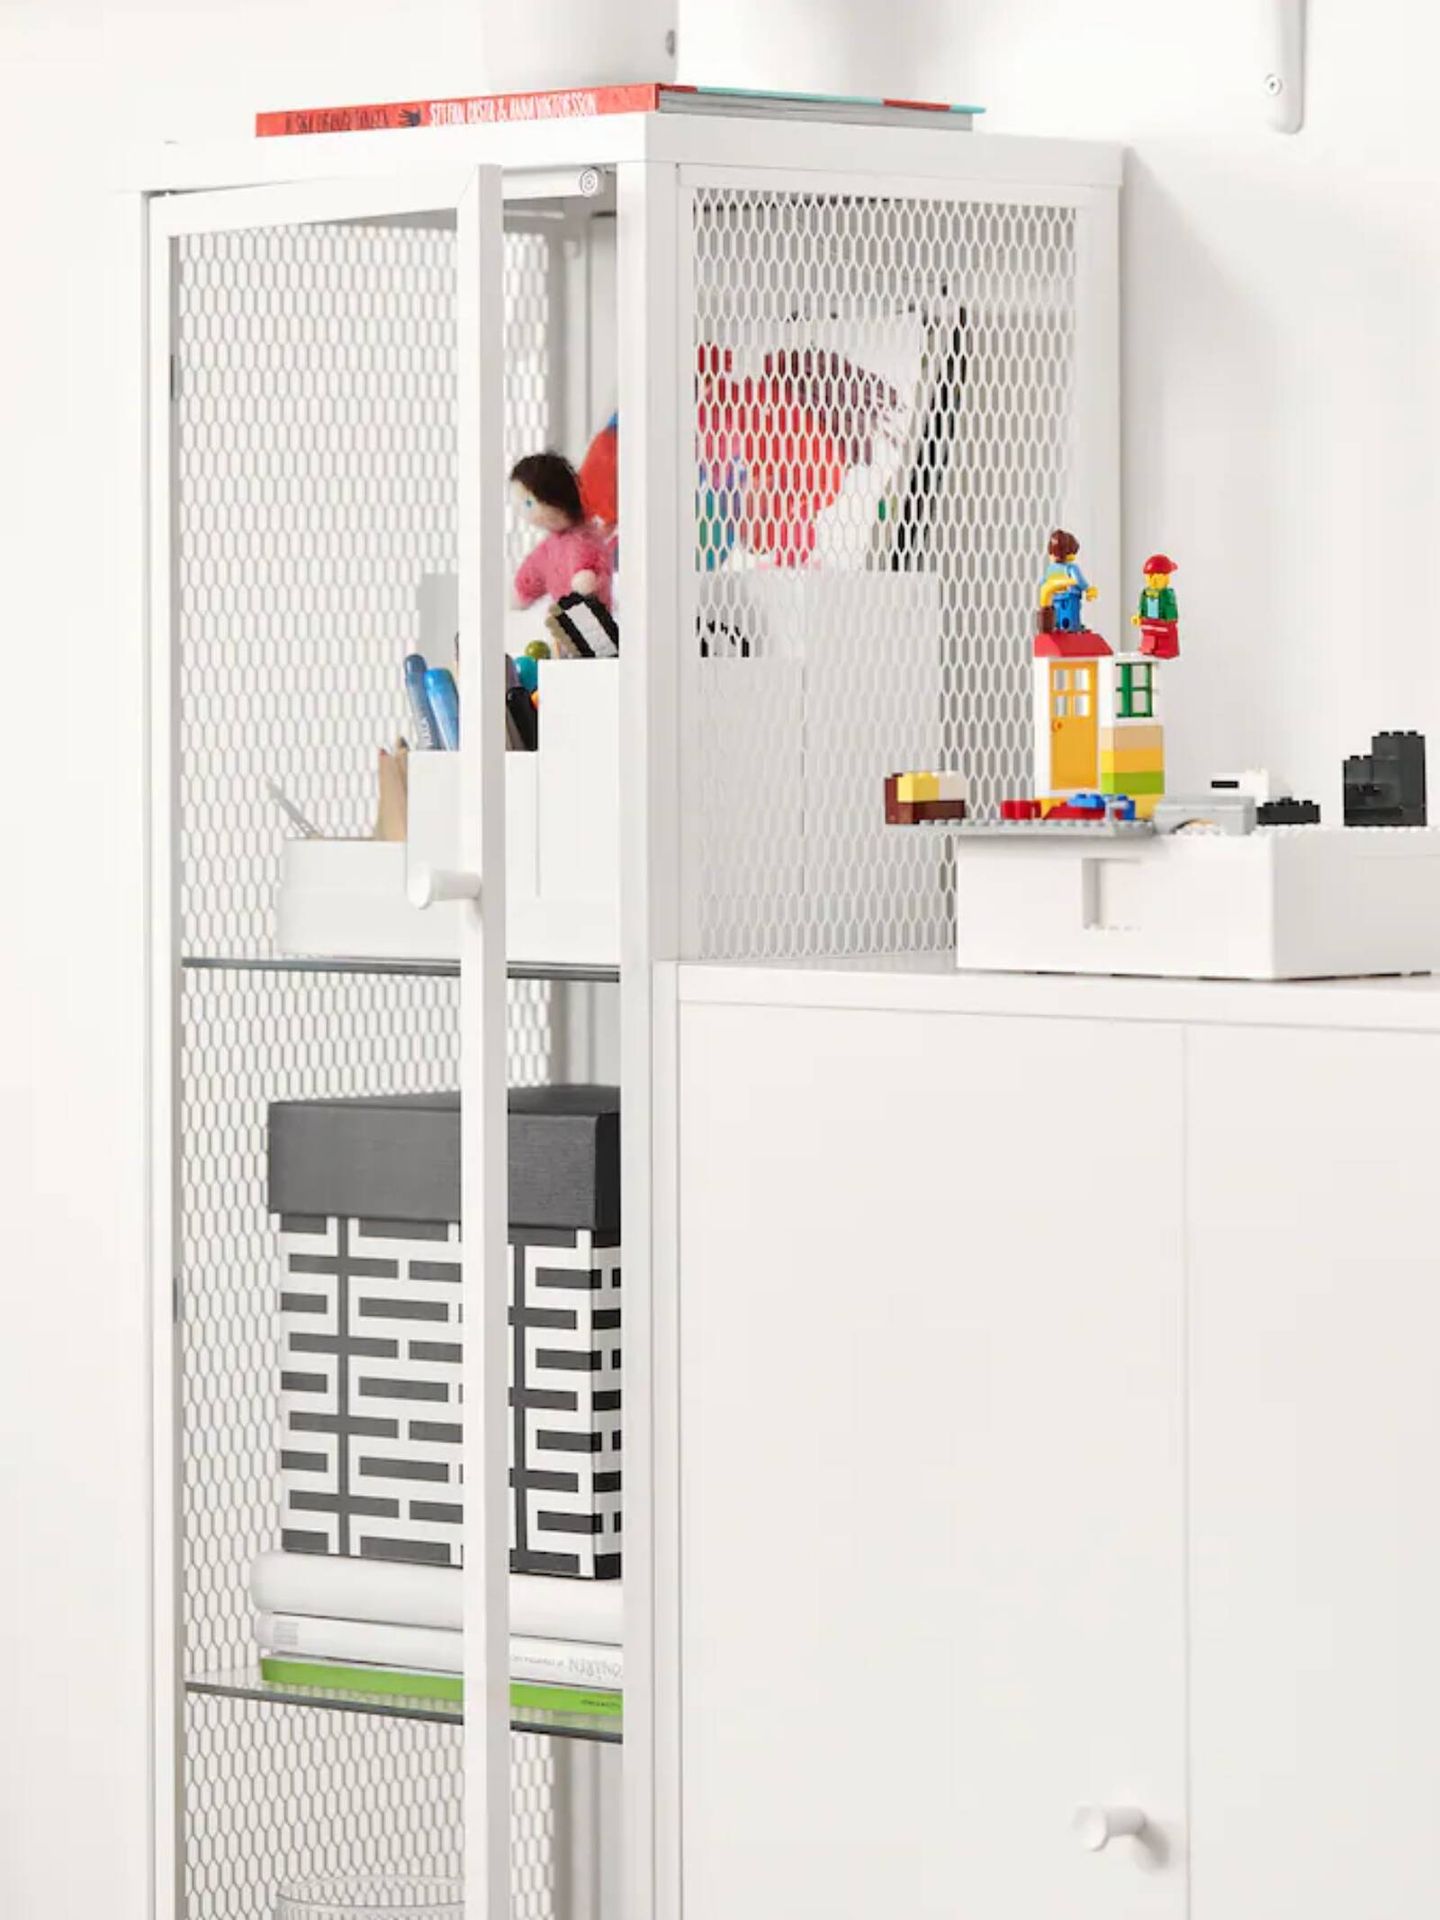 La vitrina de Ikea, el mueble ideal para una casa elegante y ordenada. (Cortesía)